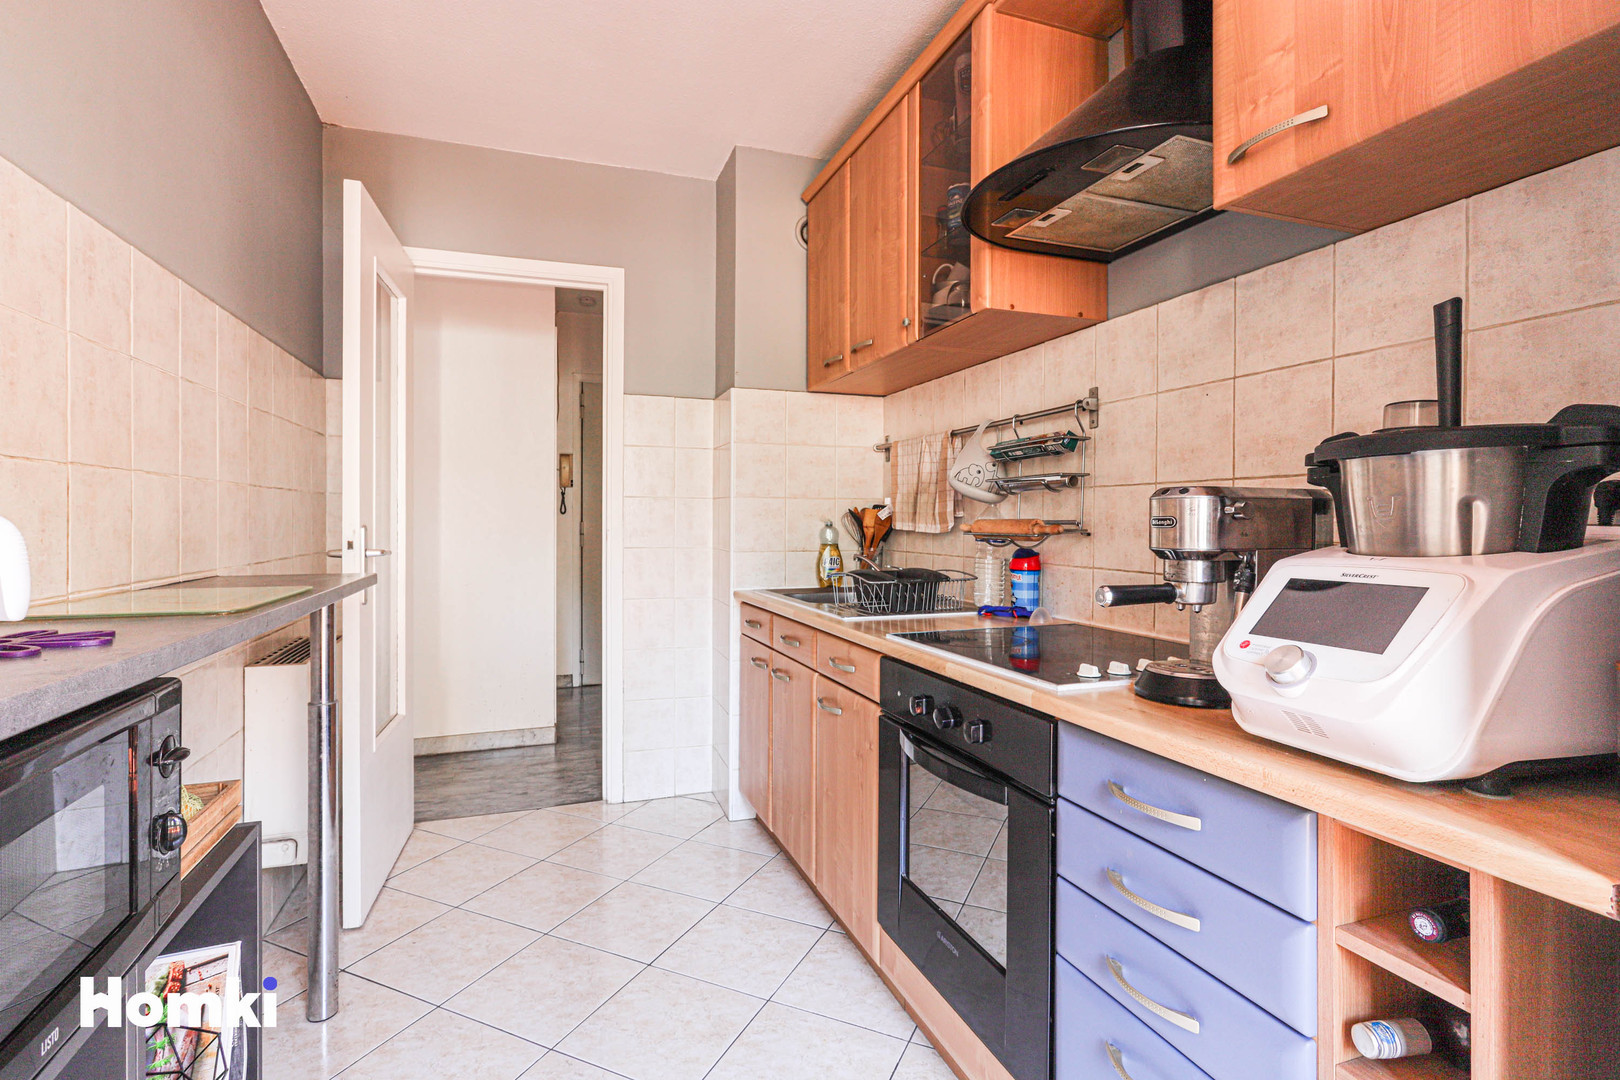 Homki - Vente Appartement  de 46.05 m² à Nice 06300